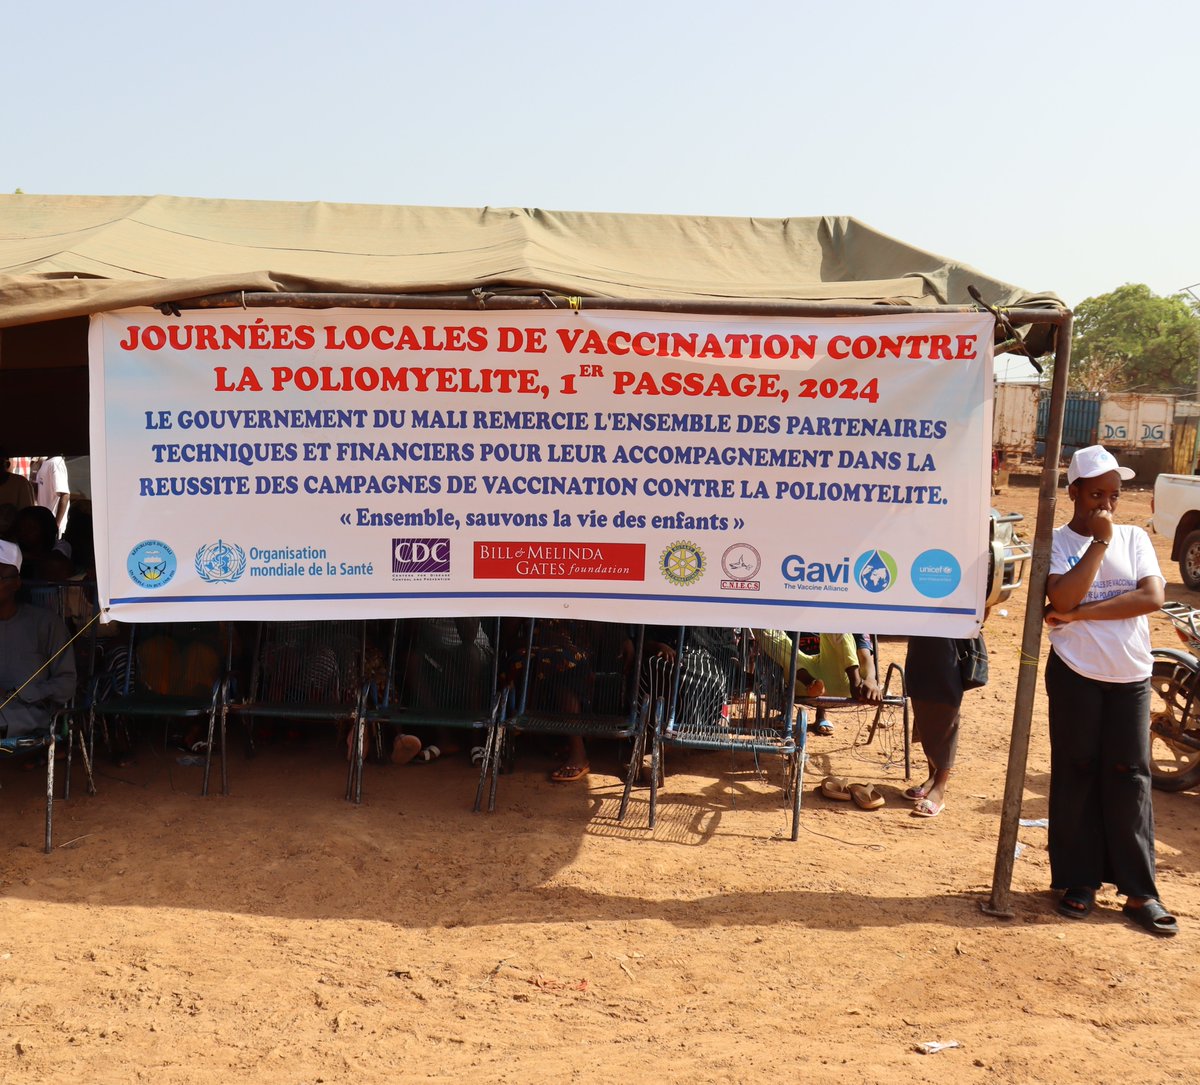 La campagne #Polio démarre en force au #Mali. A Kita, les autorités ont donné le coup d'envoi. Pendant 4 jours, @MSDS_Mali, @UNICEF, @omsmali, @gavi_fr et d’autres partenaires s'unissent pour vacciner plus de 4 millions d'enfants contre cette maladie évitable. #PourChaqueEnfant